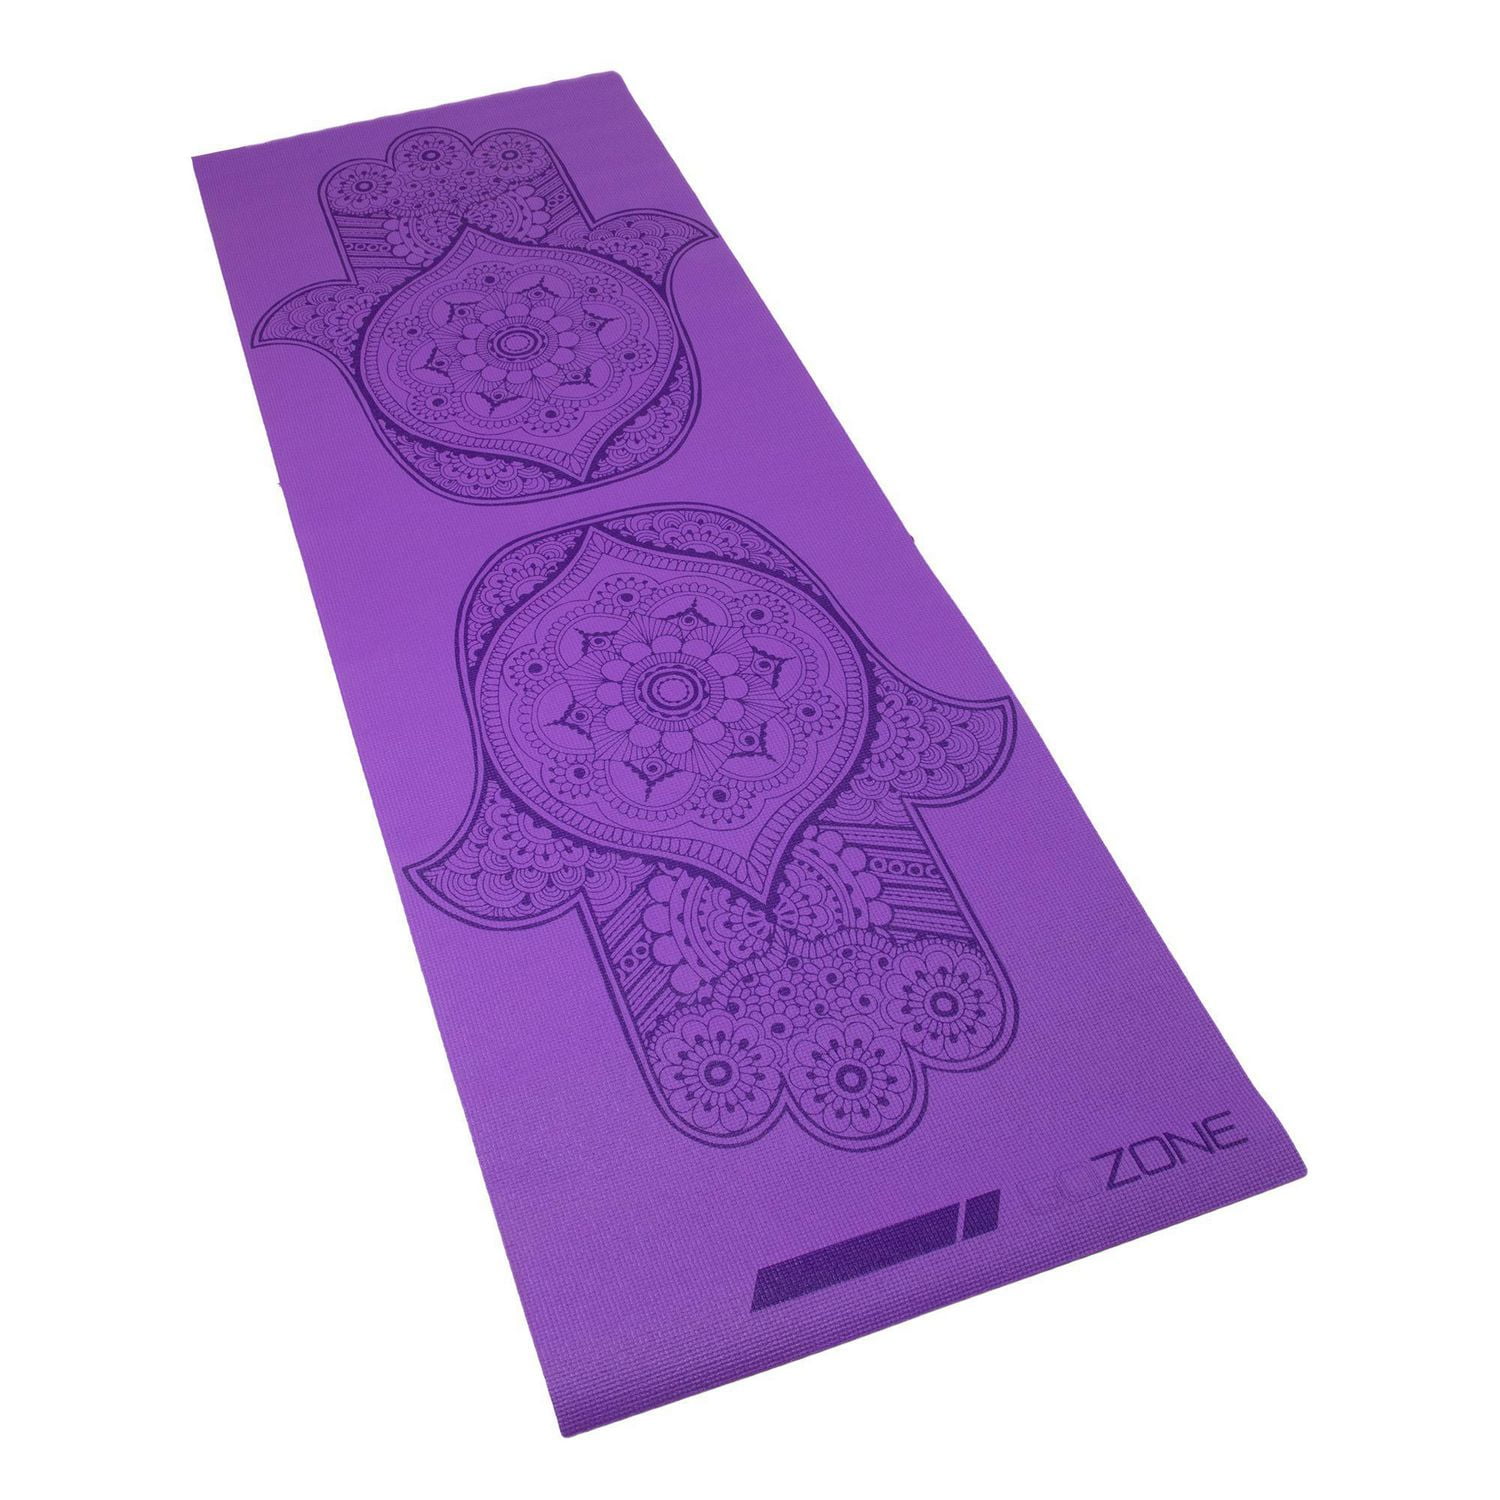 Yoga Mat Bag - Purple Floral Print